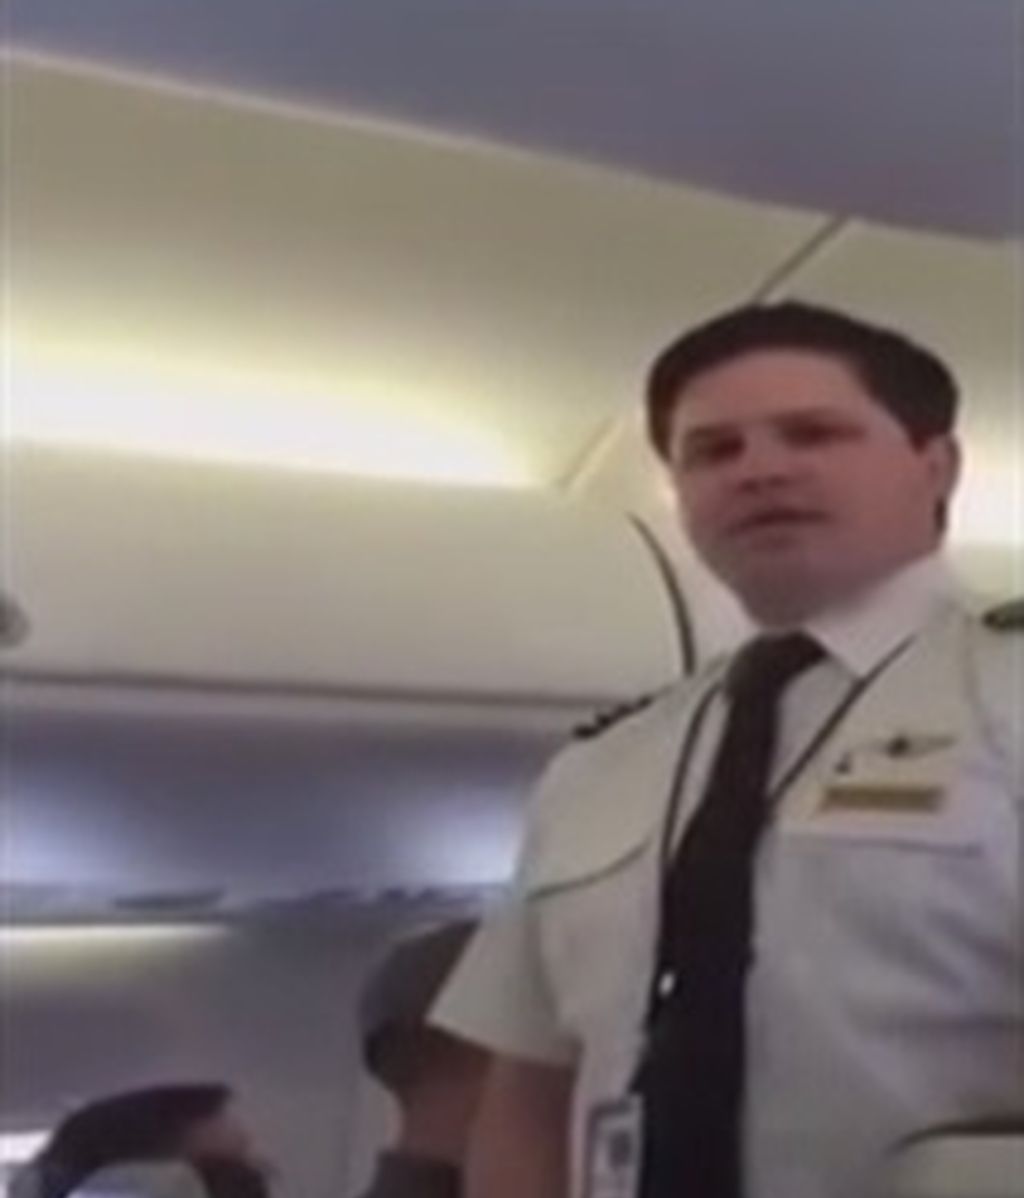 Denuncia el 'maltrato' a su familia por su aspecto físico en un avión